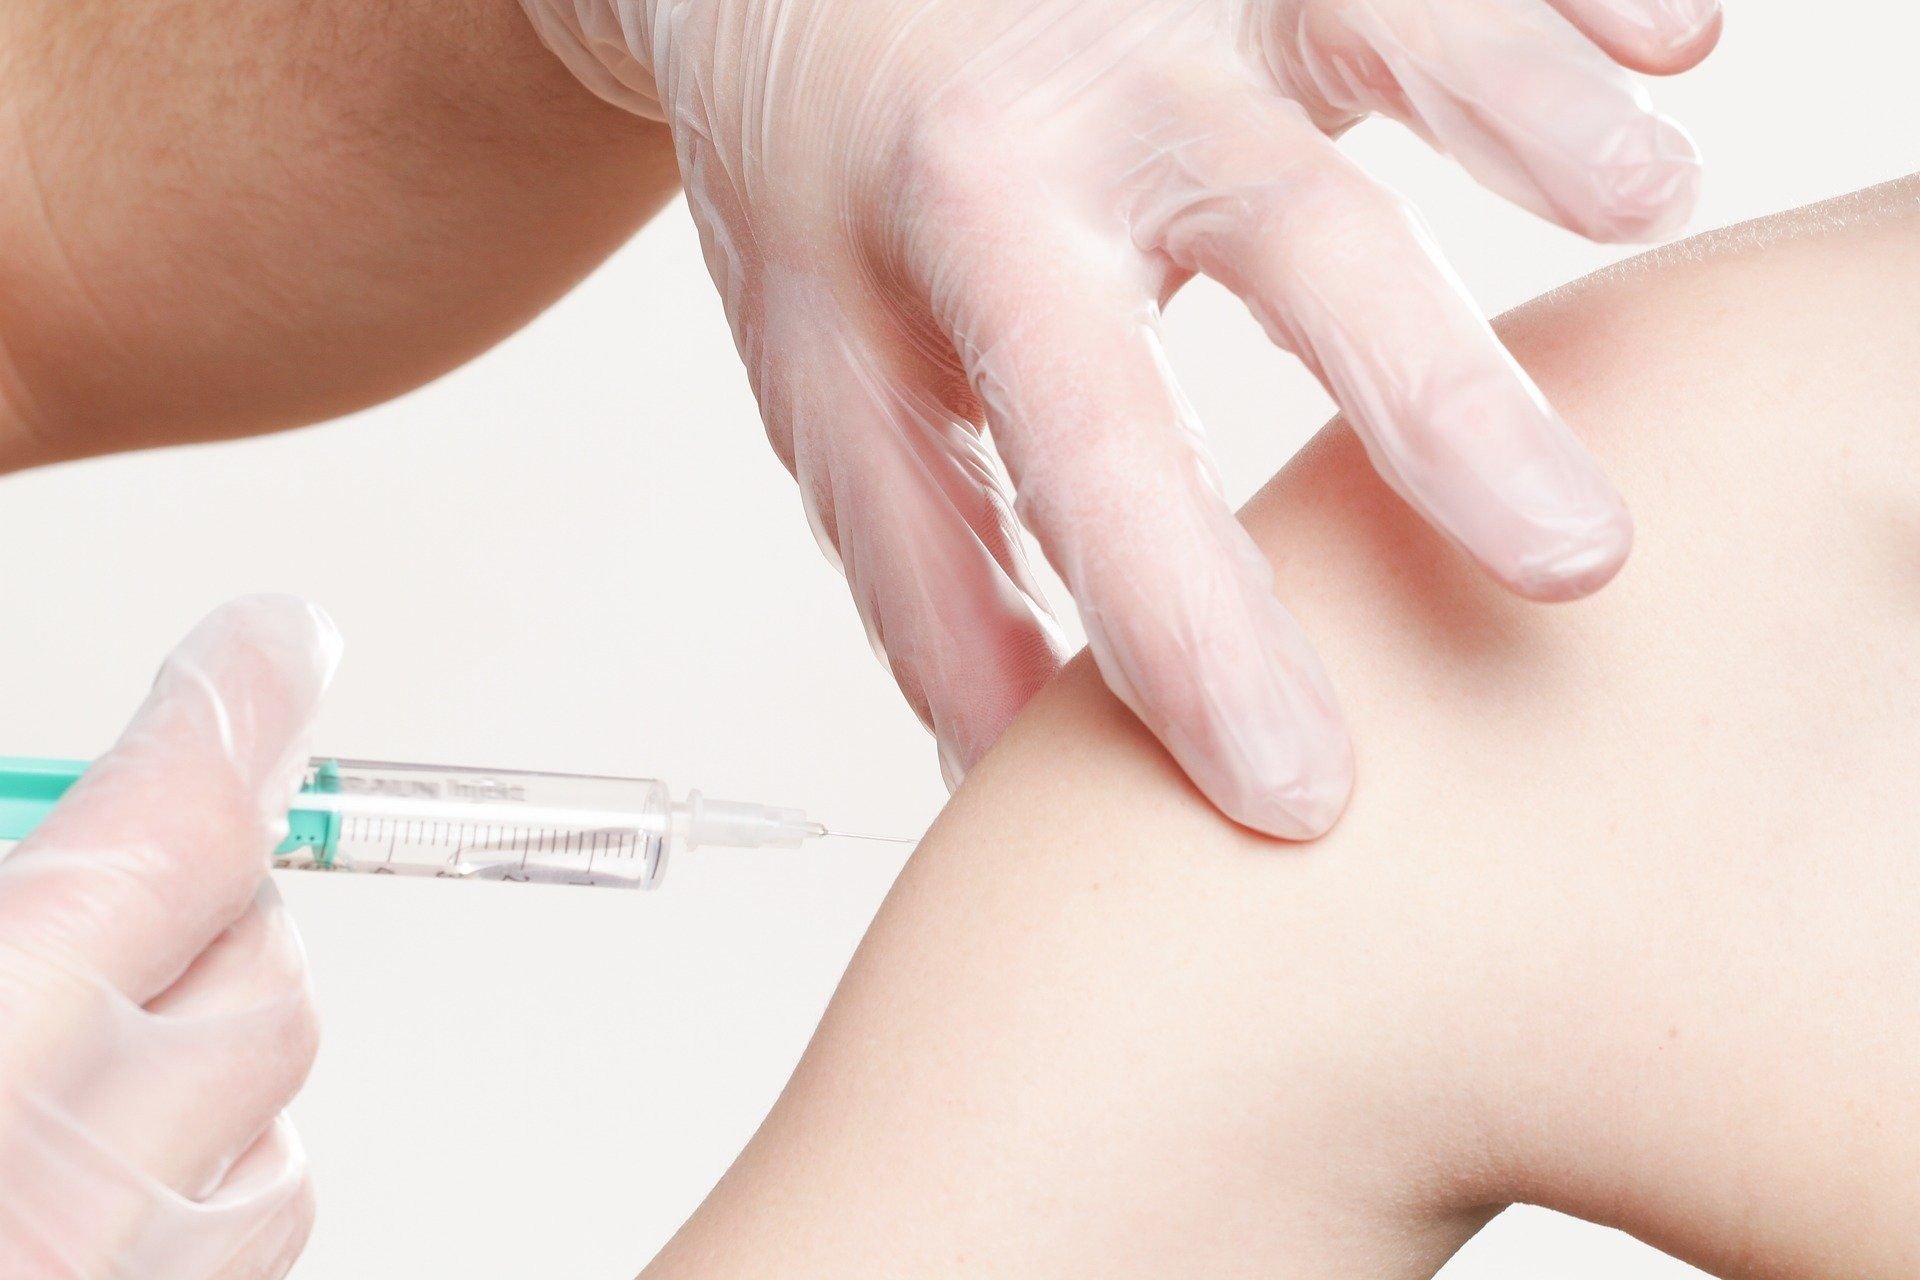 Szczepionka 5w1 – czy warto i dlaczego?